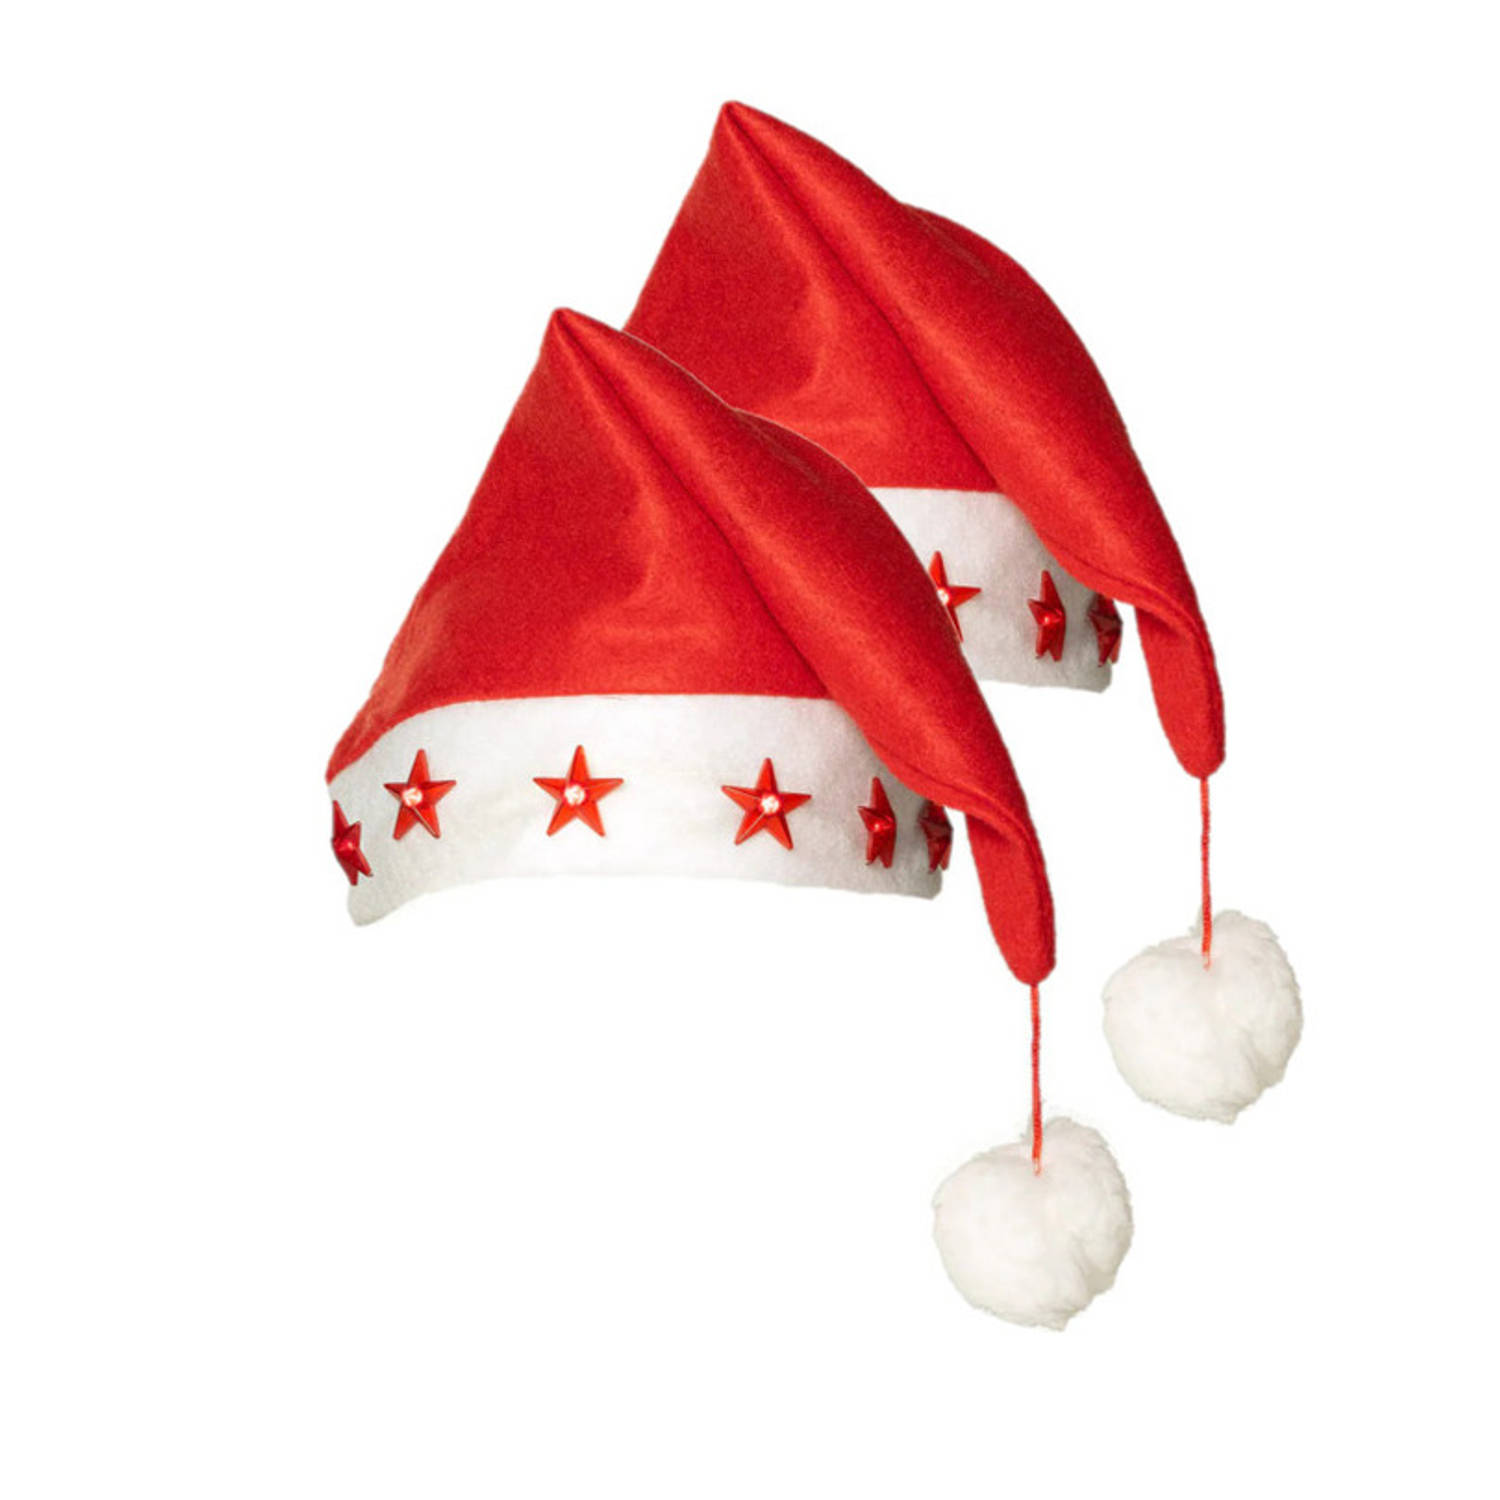 Kerstmutsen - 2x stuks - rood - met sterren lichtjes - verlichte kerstmutsen - Kerstmutsen